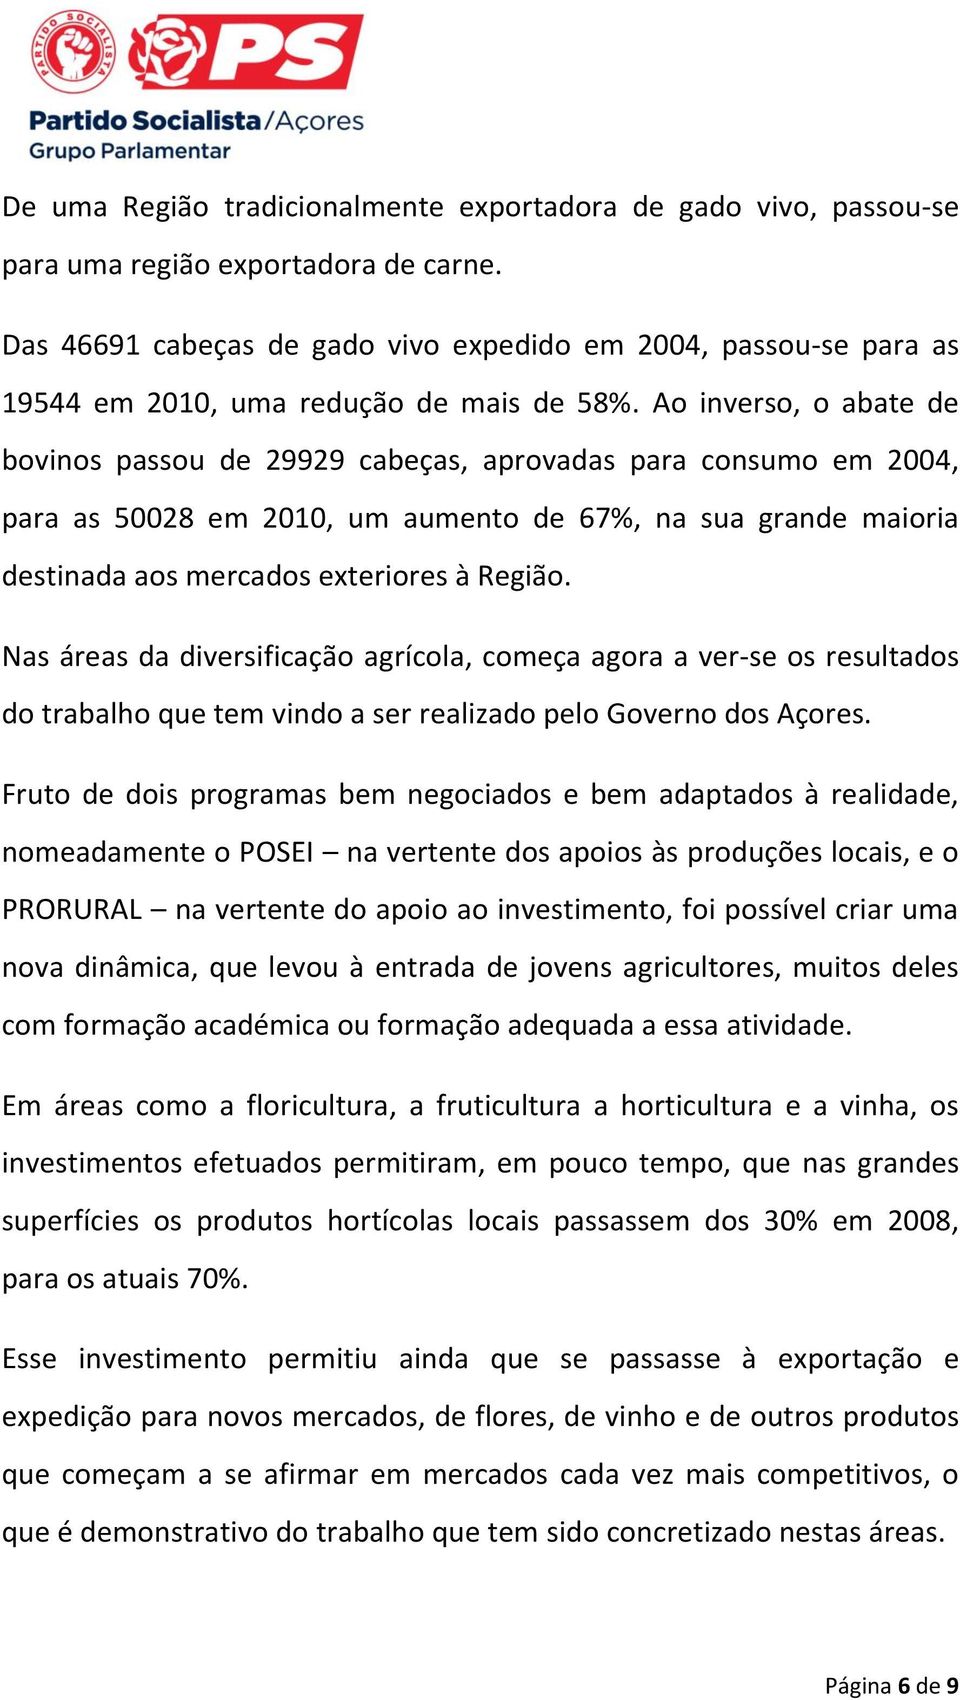 Ao inverso, o abate de bovinos passou de 29929 cabeças, aprovadas para consumo em 2004, para as 50028 em 2010, um aumento de 67%, na sua grande maioria destinada aos mercados exteriores à Região.